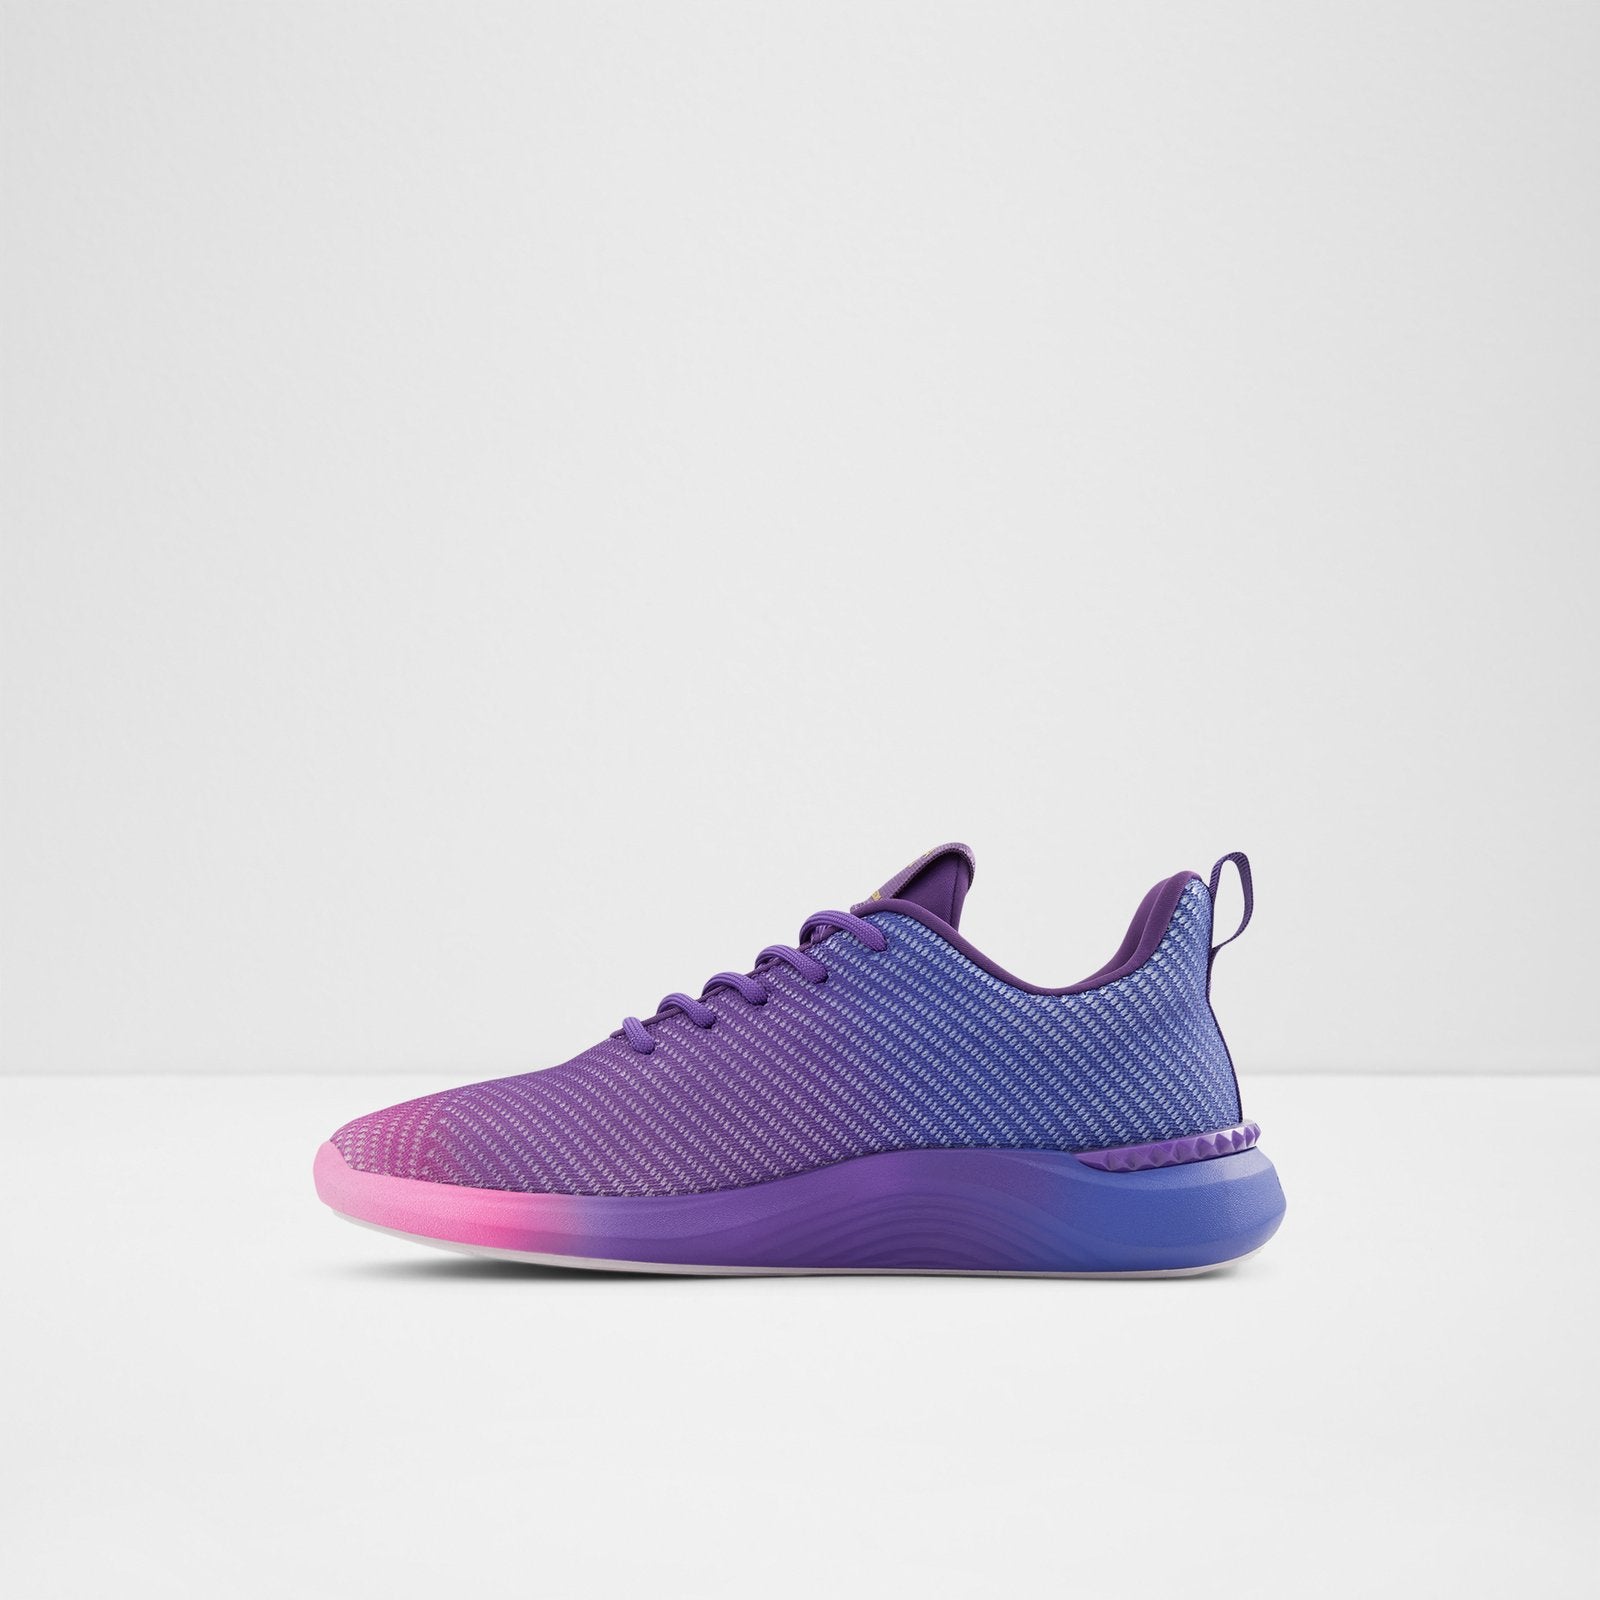 Rppl-dxl Women Shoes - Multicolor - ALDO KSA